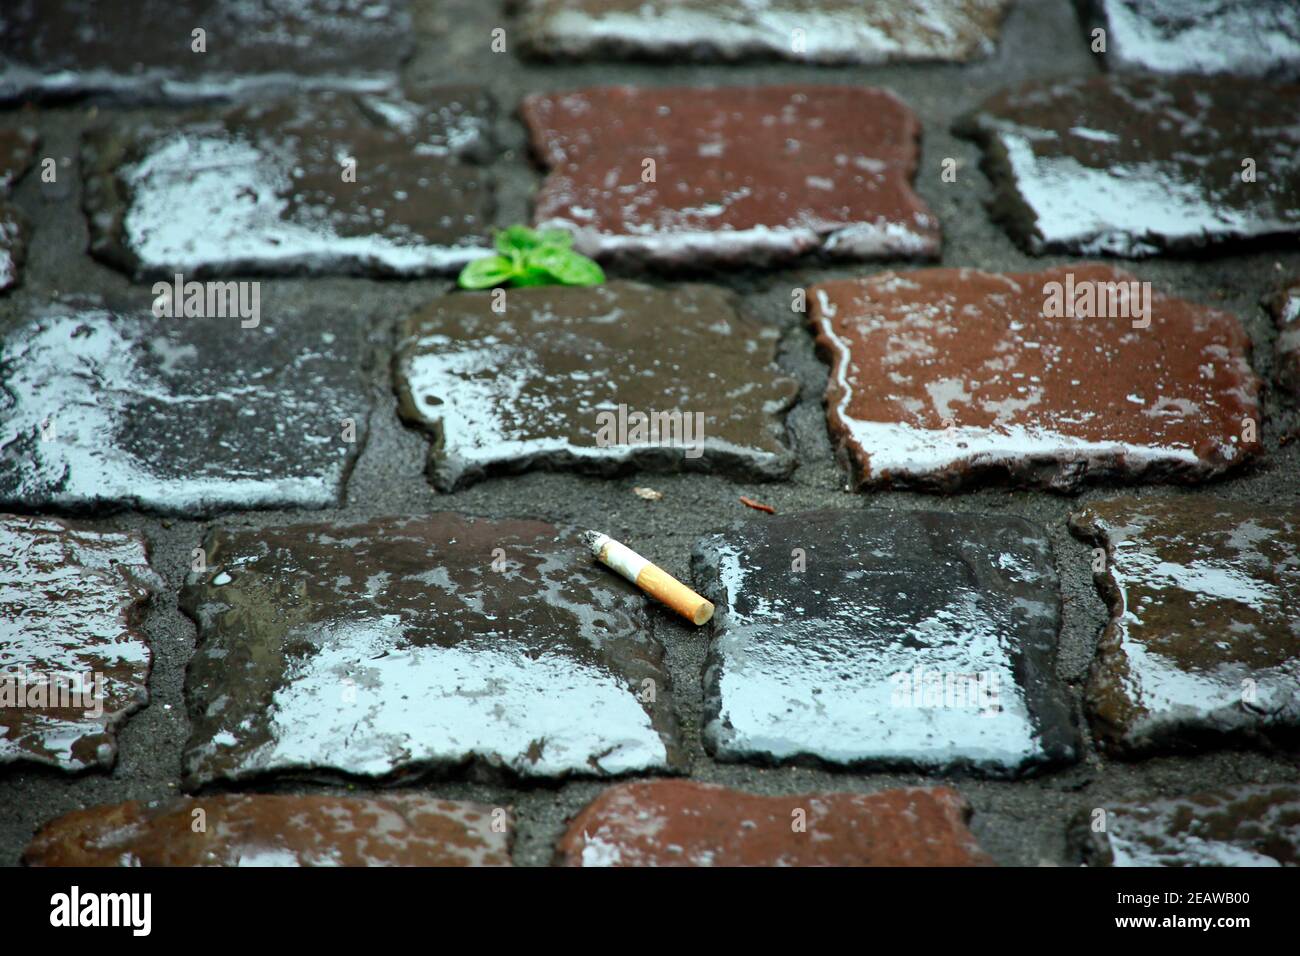 Zigarettenstummel mit Filter auf regennassem Kopfsteinpflaster Stock Photo